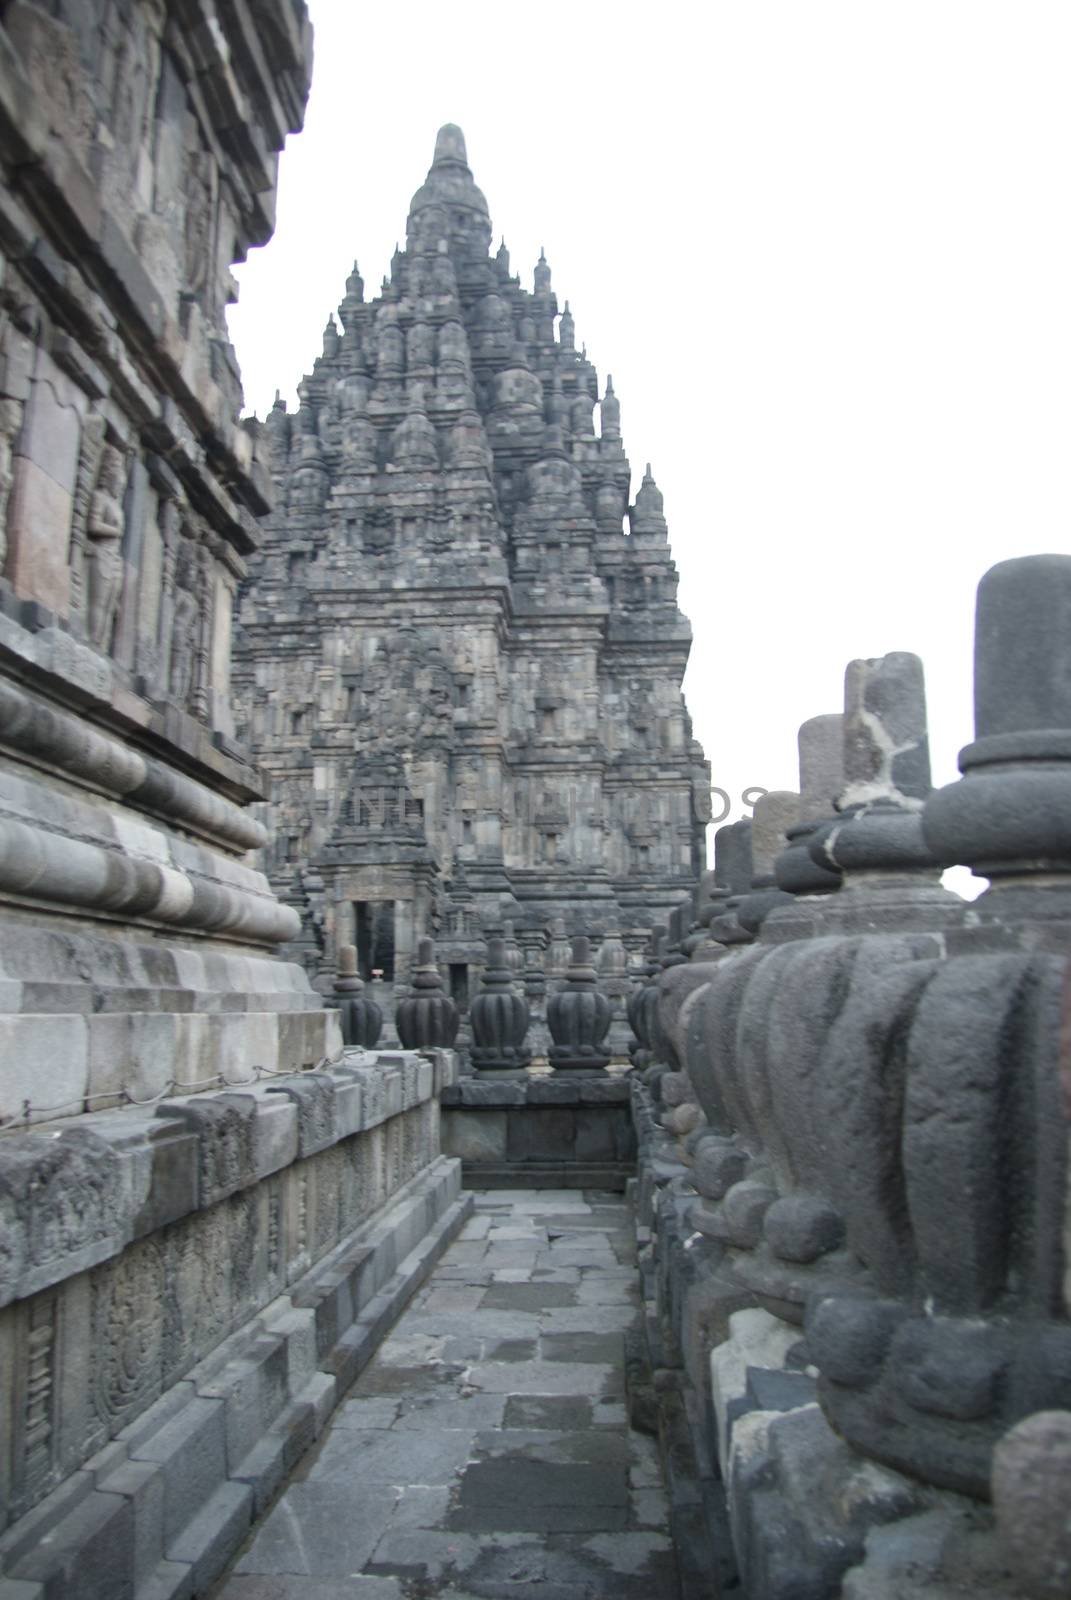 Prambanan Historical Complex in Yogyakarta, Indonesia